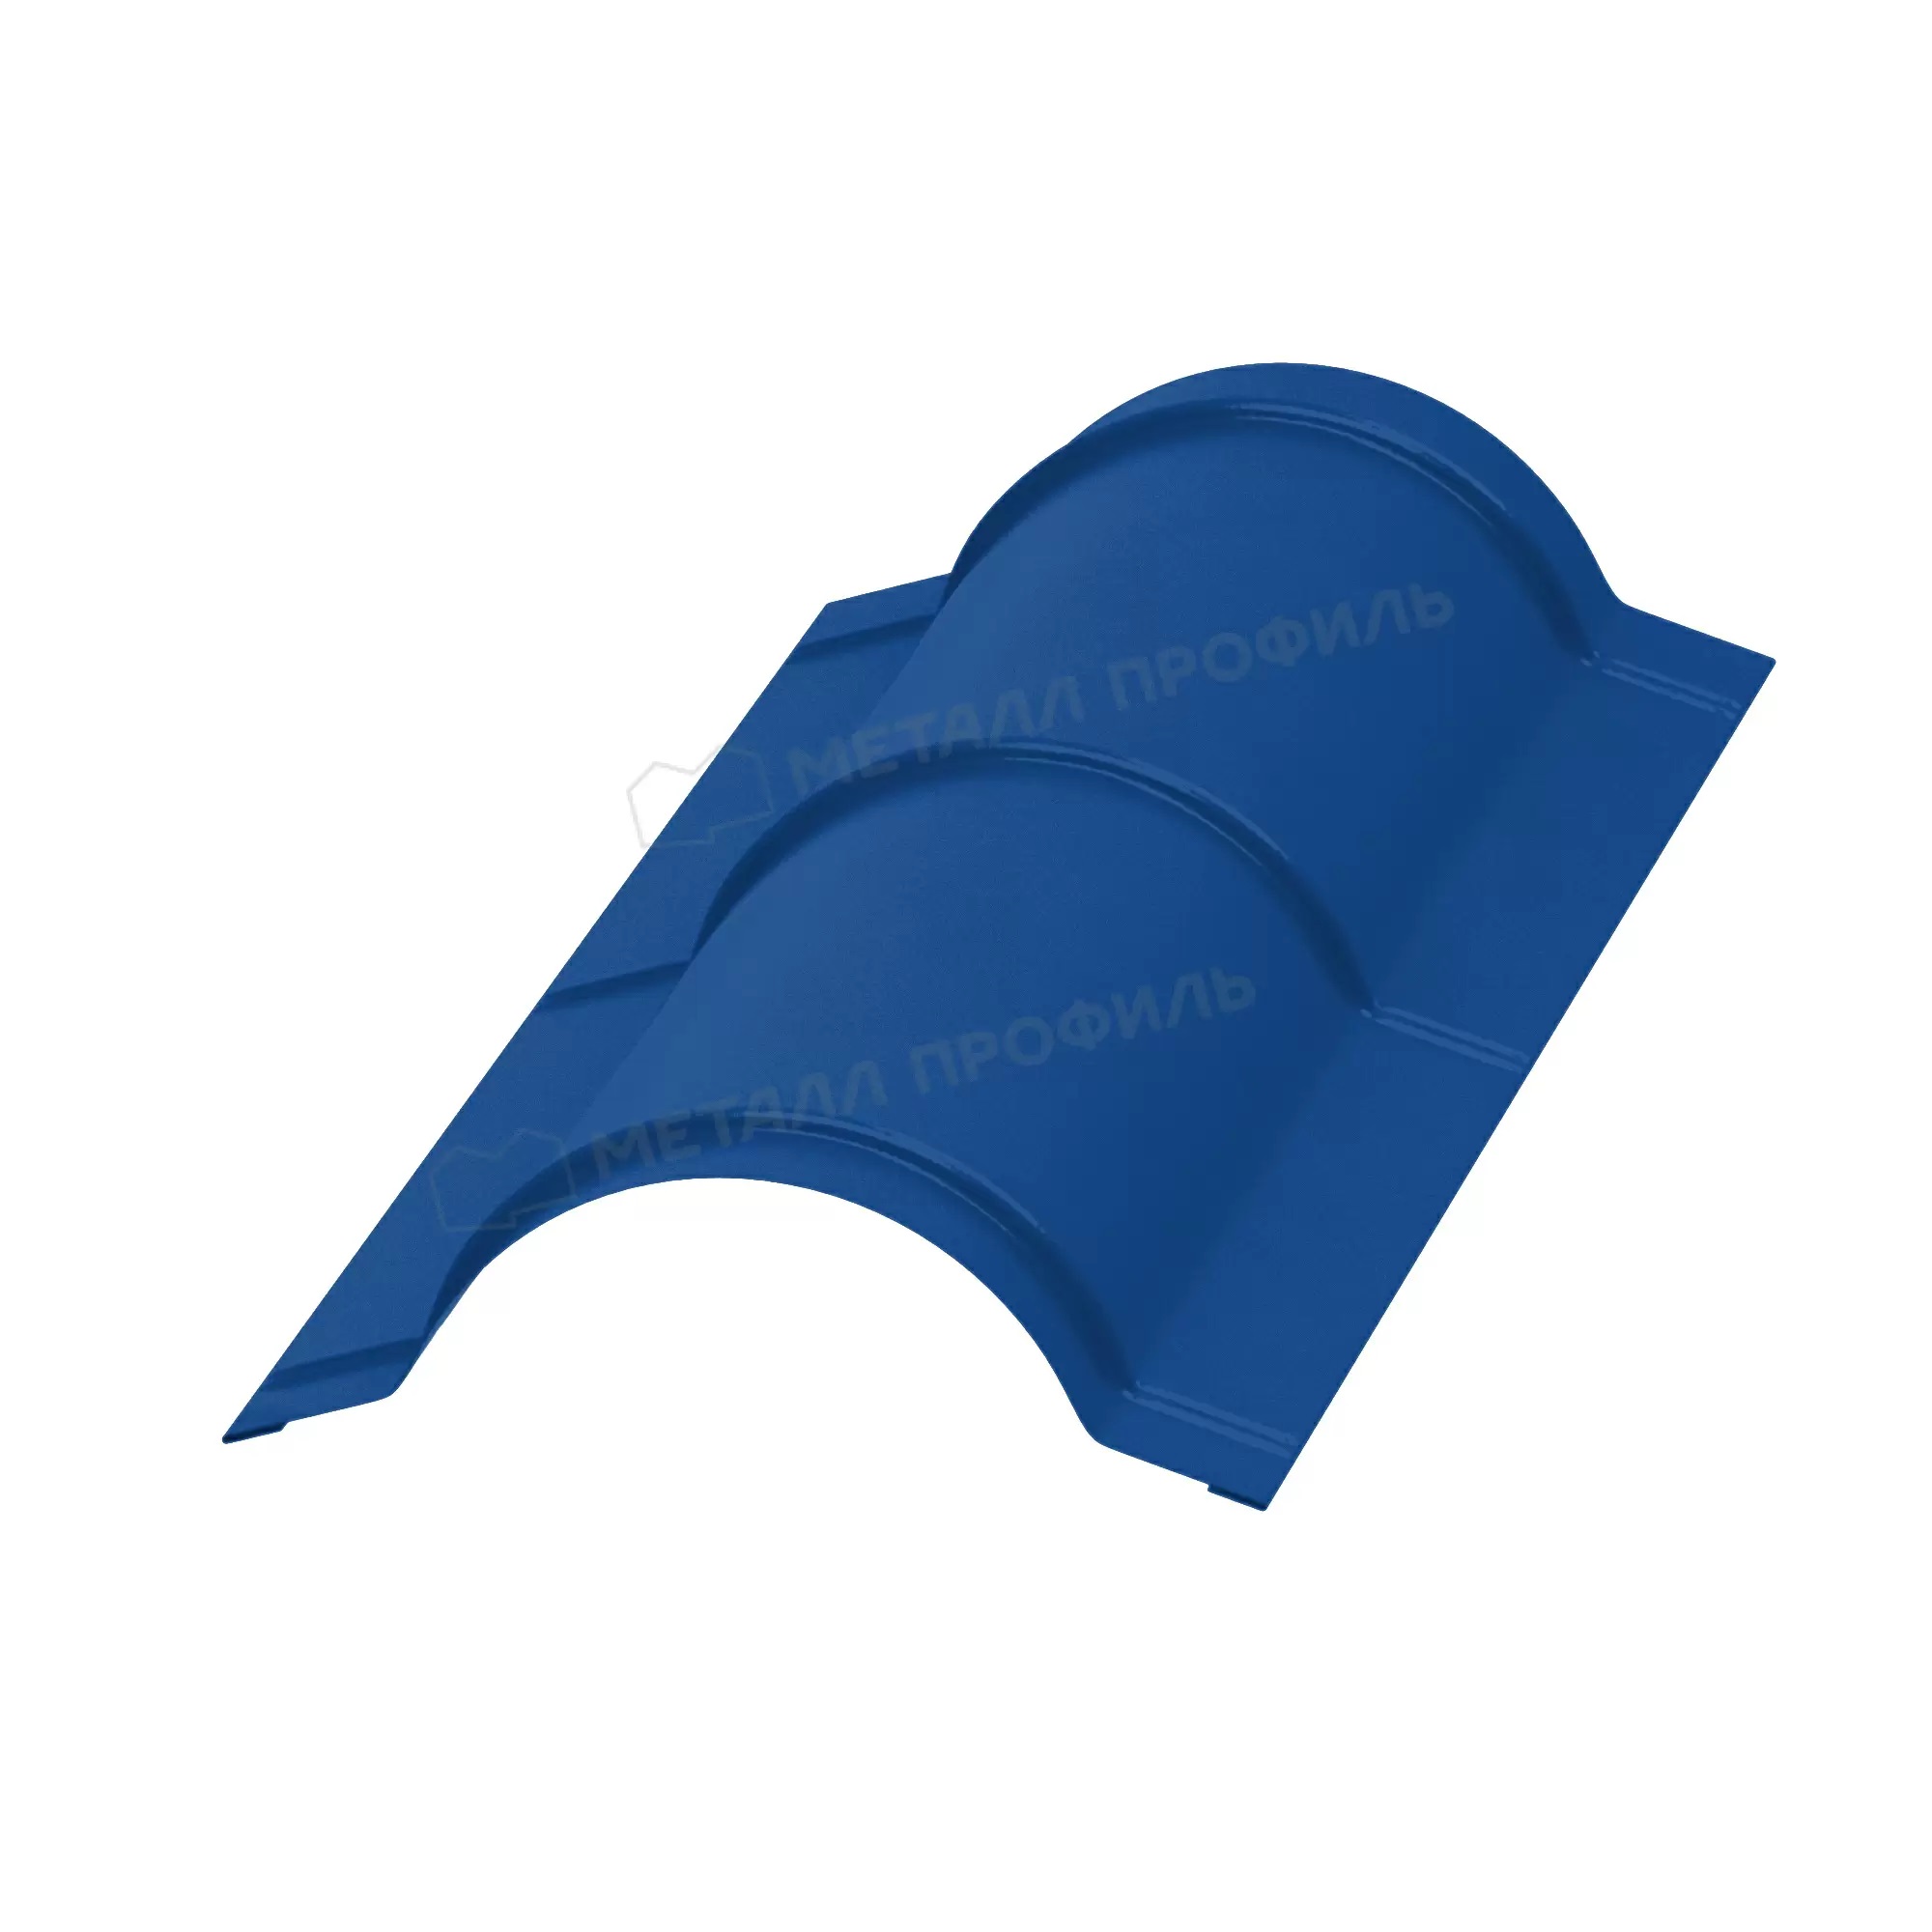 Планка конька круглого, покрытие полиэстер, цвет синий насыщенный (5005), R110*2000*0,5 мм